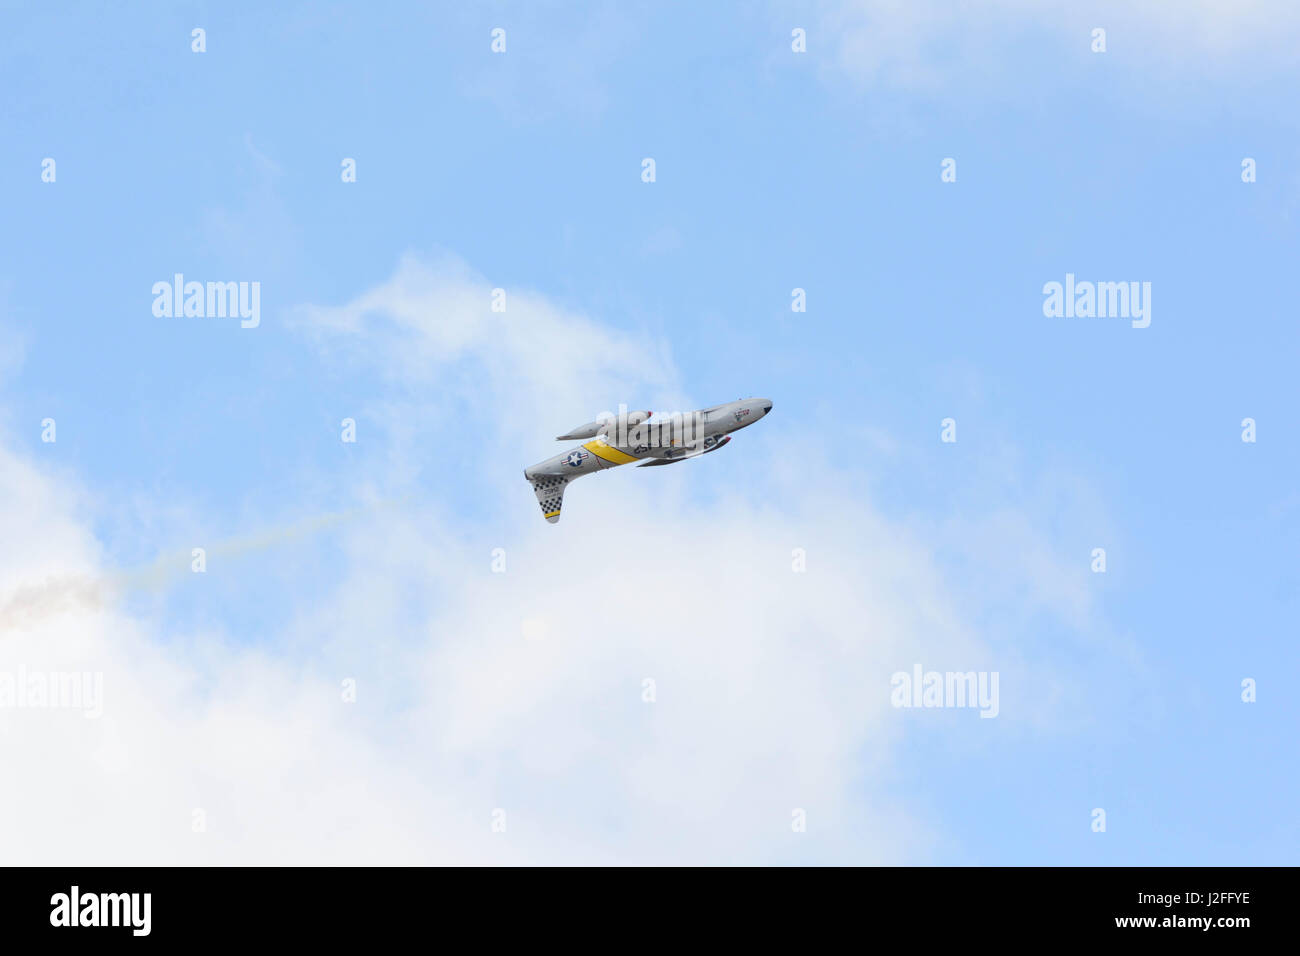 Lancaster, Stati Uniti d'America - 25 Marzo 2017: Greg Wired Colyer è volare un Lockheed T-33 Shooting Star durante il Los Angeles County Air Show al William J Fox Foto Stock